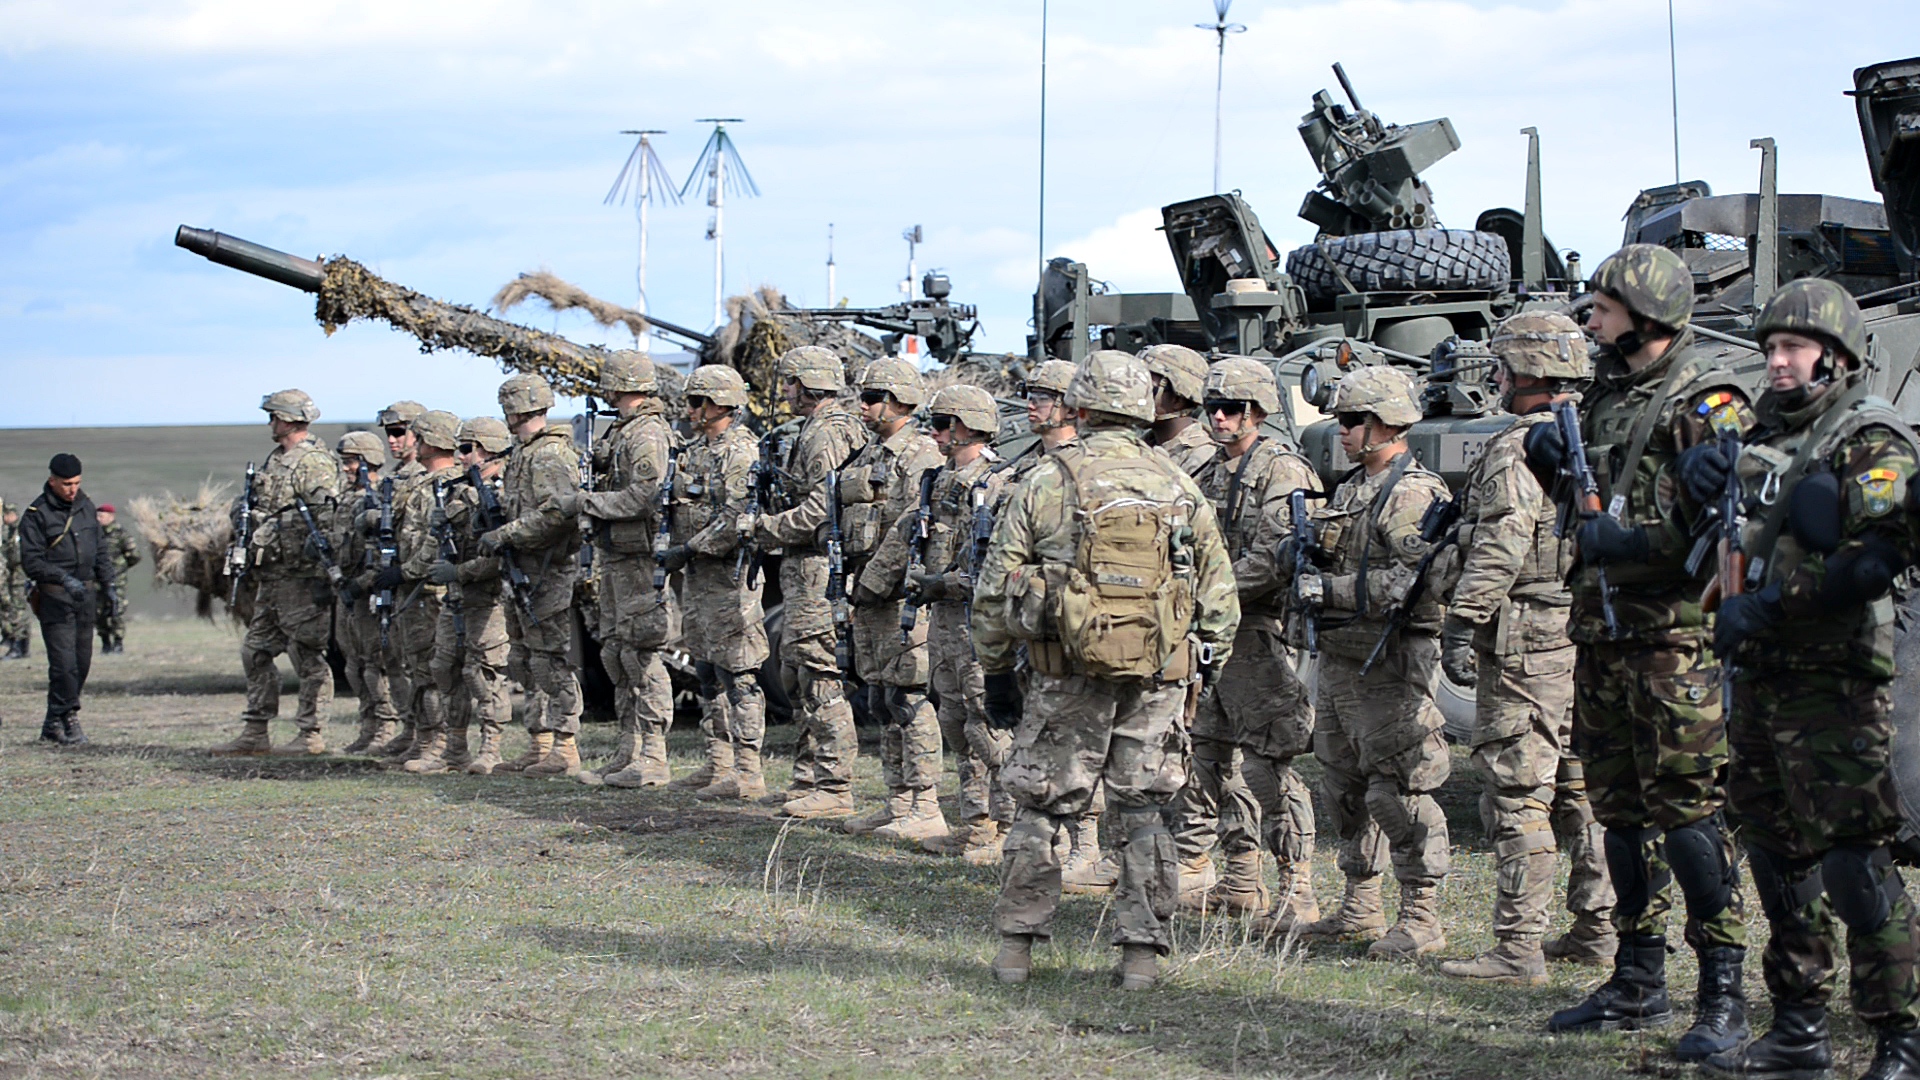 Armata României se dotează: Cumpără sisteme de război electronic de 1 miliard de lei